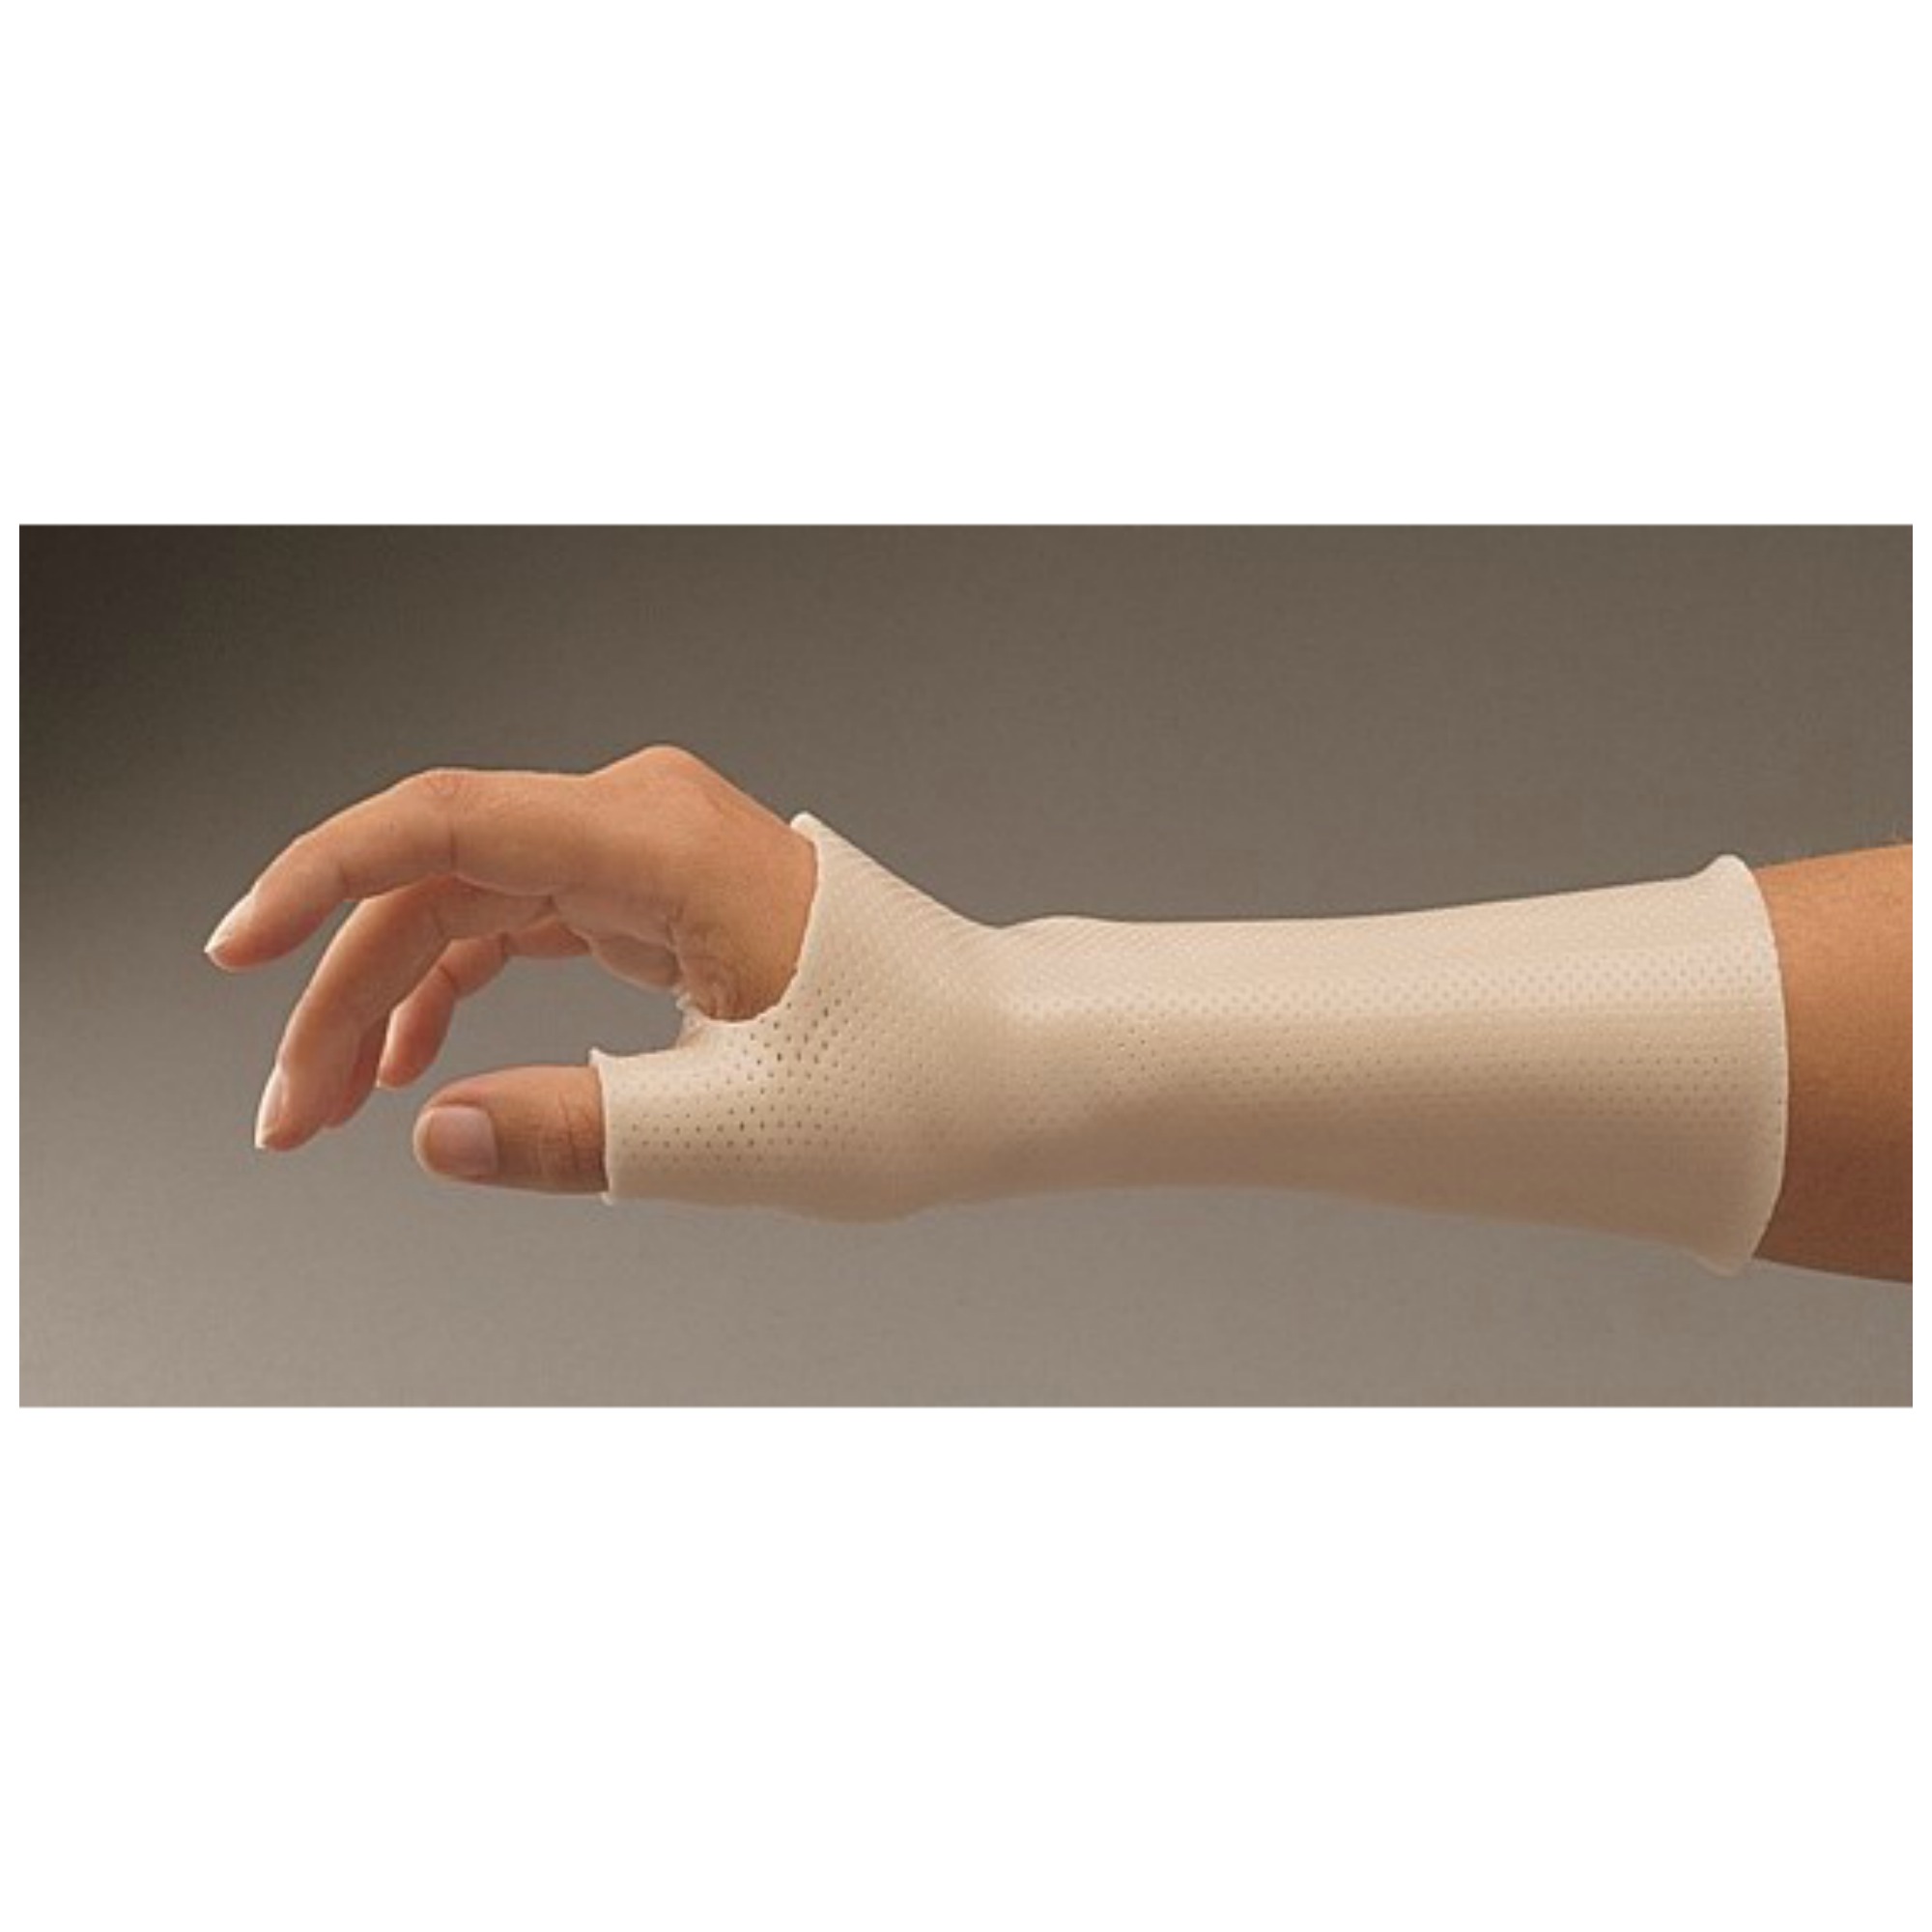 Csukló kezelés artrózisa - A kéz leggyakoribb betegségei